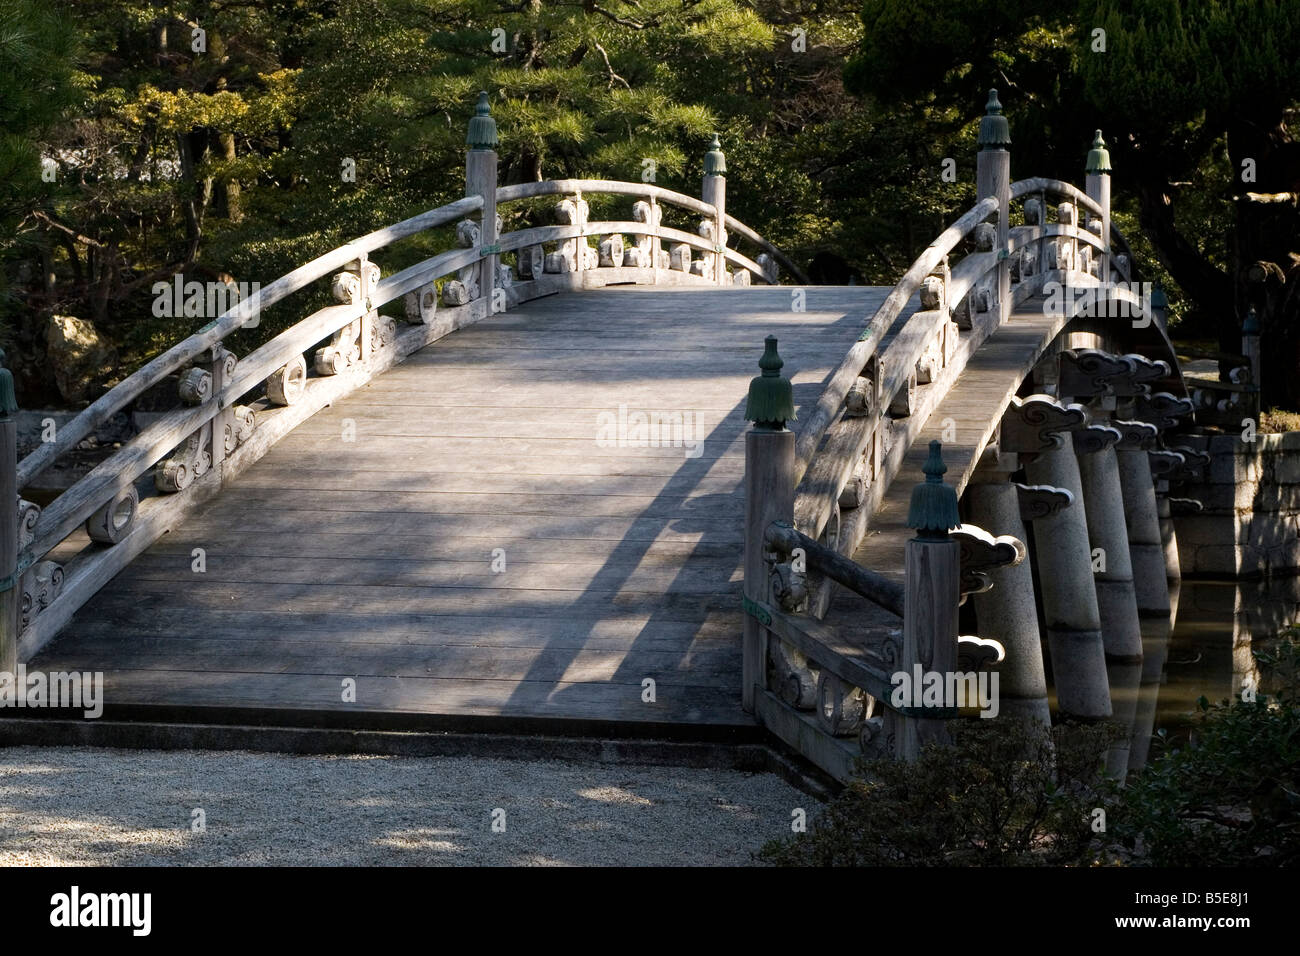 La forma arcuata Keyakibashi ponte di legno all'interno del Parco Imperiale intorno al Palazzo Imperiale di Kyoto in Giappone. Foto Stock